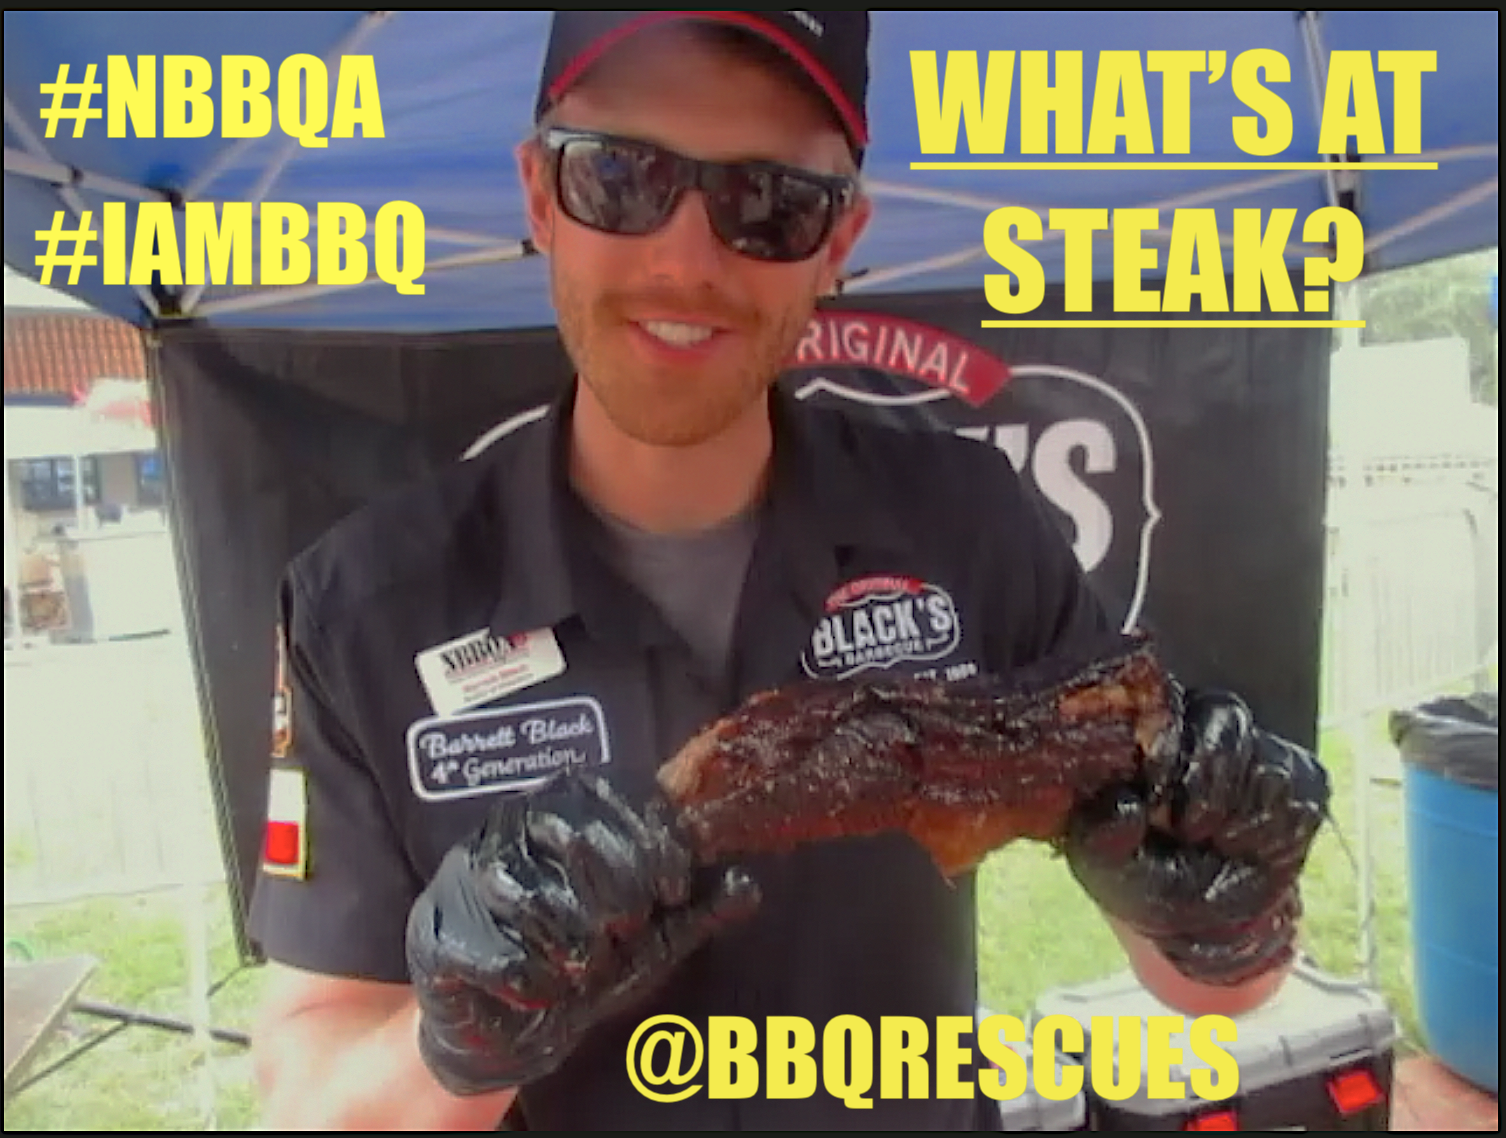 #BarrettBlack #BlacksBarbecue #IAmBBQ #NBBQA #IAMBBQ2017